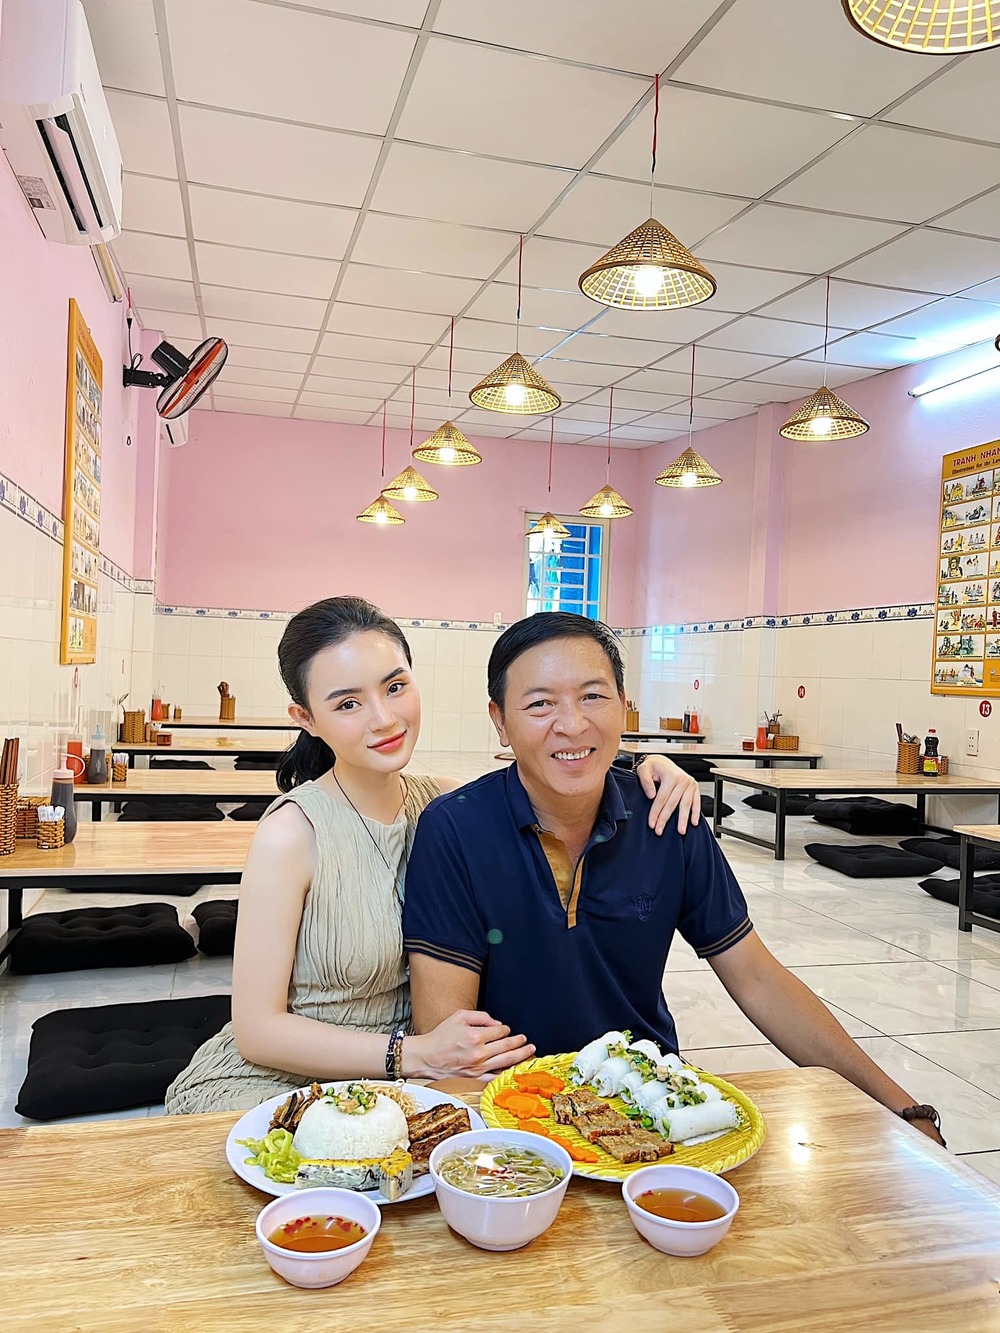  
Hiện tại, em gái Angela Phương Trinh đang giúp gia đình quản lý các nhà hàng chay. (Ảnh: FB Phương Trang) - Tin sao Viet - Tin tuc sao Viet - Scandal sao Viet - Tin tuc cua Sao - Tin cua Sao